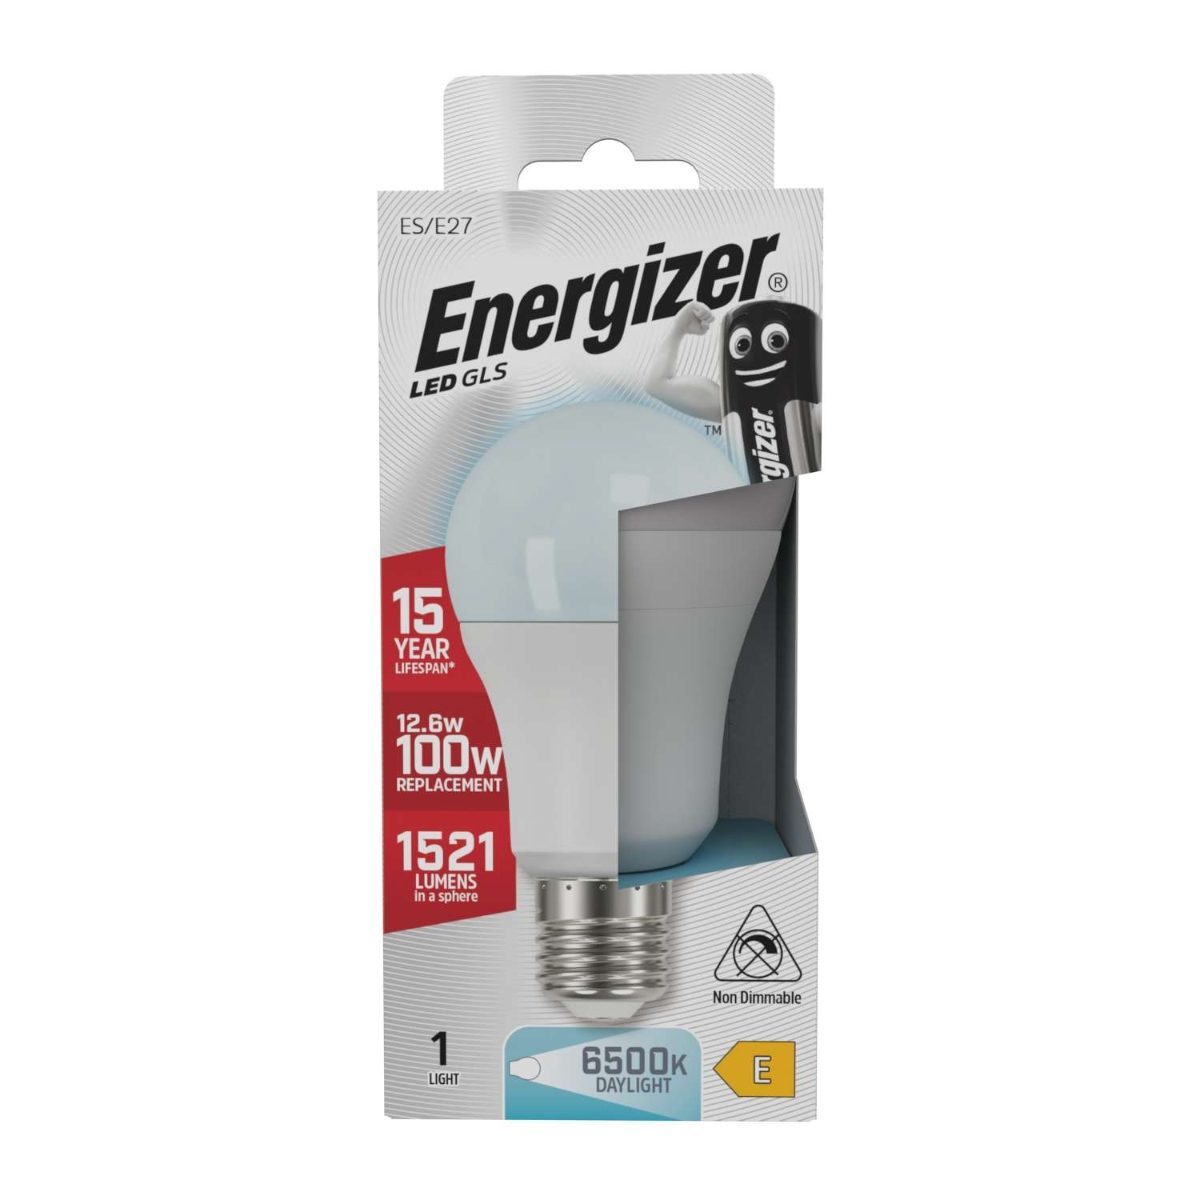 Energizer LED GLS E27 (ES) 1.521 Lumen 13,5 W 6.500 K (Tageslicht), Packung mit 1 Stück